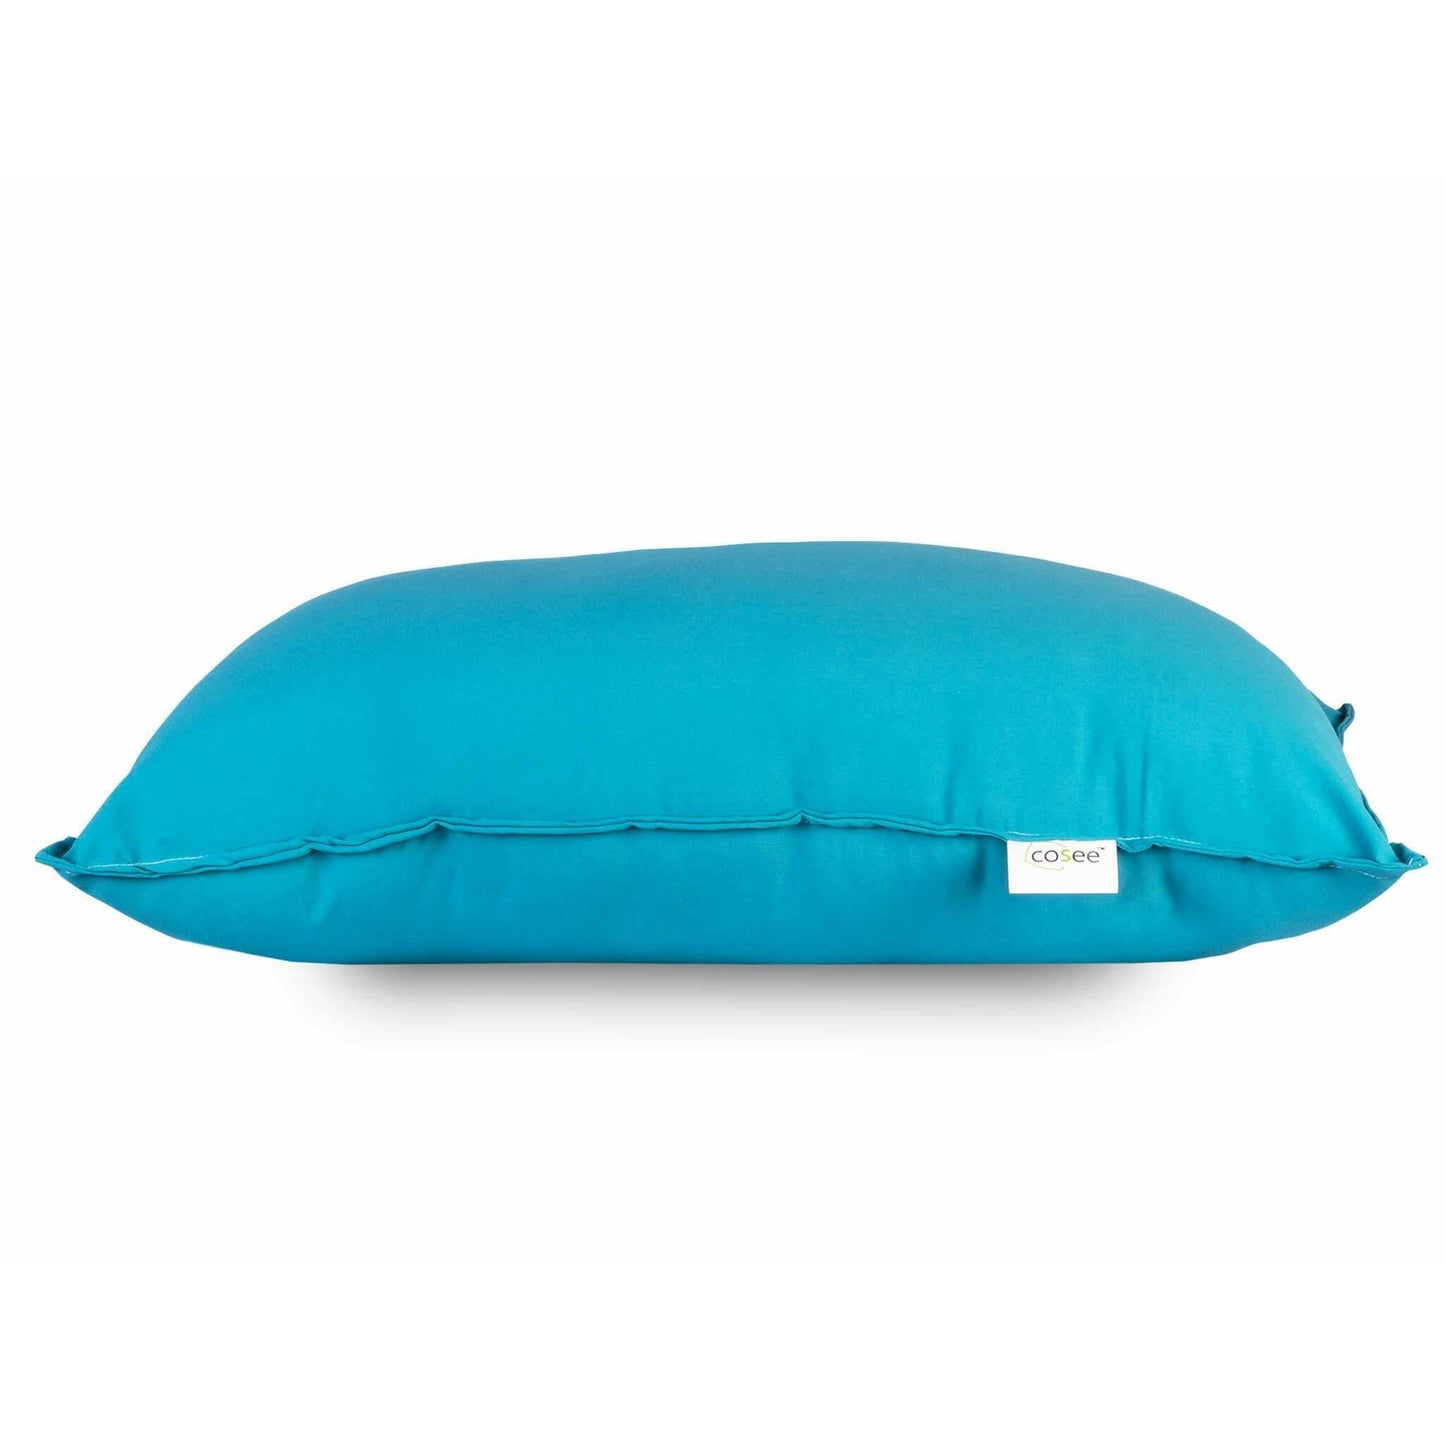 Cosee Basic Micro Fiber Color Pillow - SleepCosee